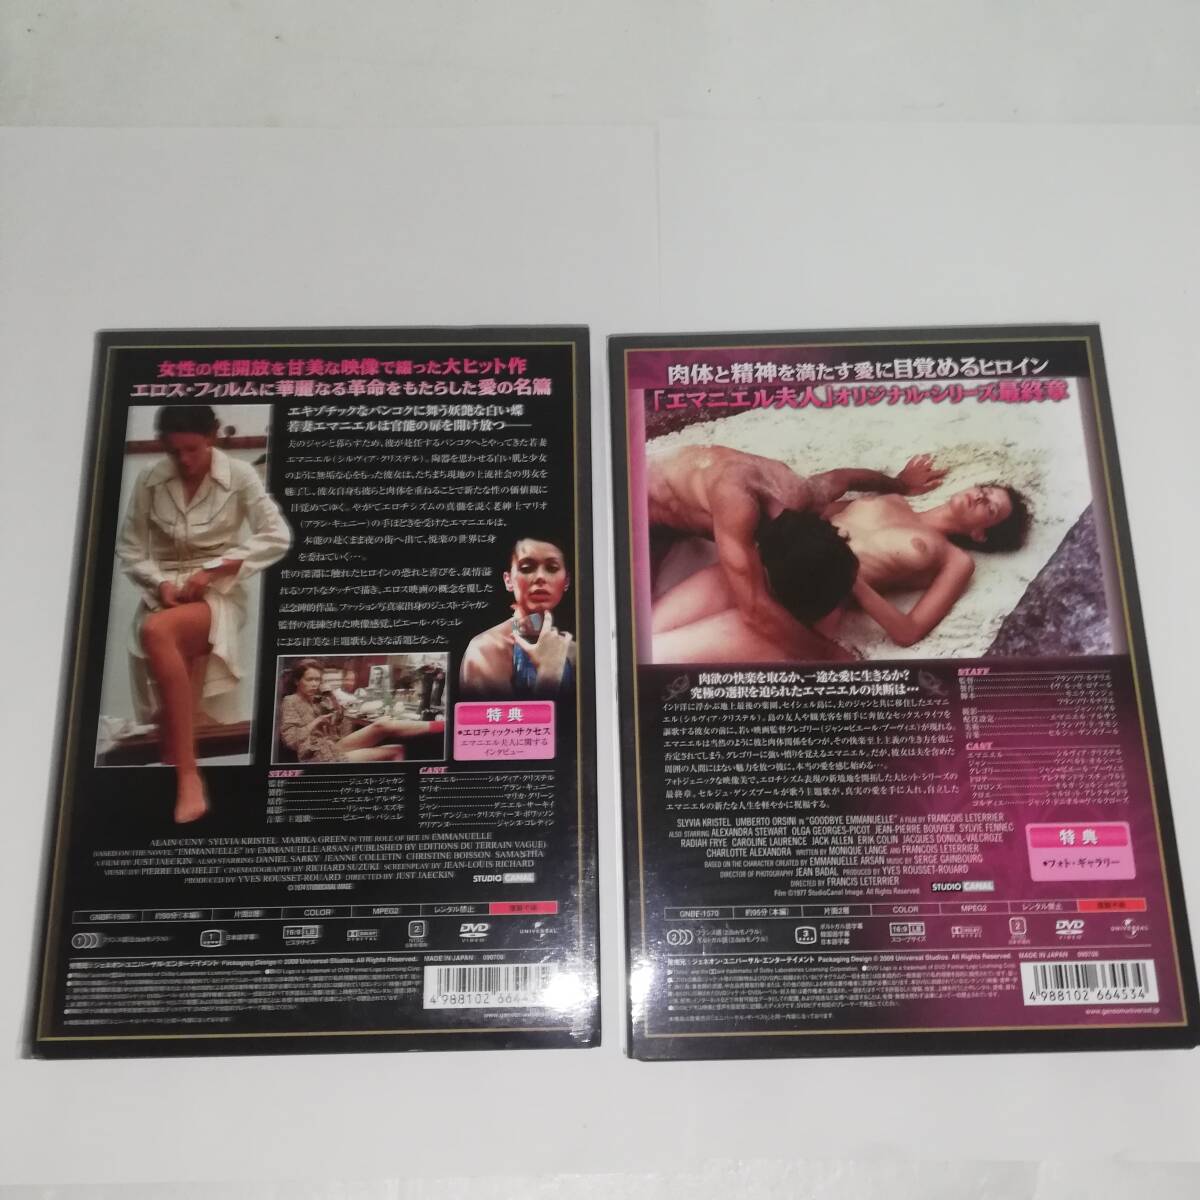 ◆エマニエル夫人 さよならエマニエル夫人 ◆セル版 DVDディスク計2枚 現状中古品◆出演:シルヴィア・クリステル 他　